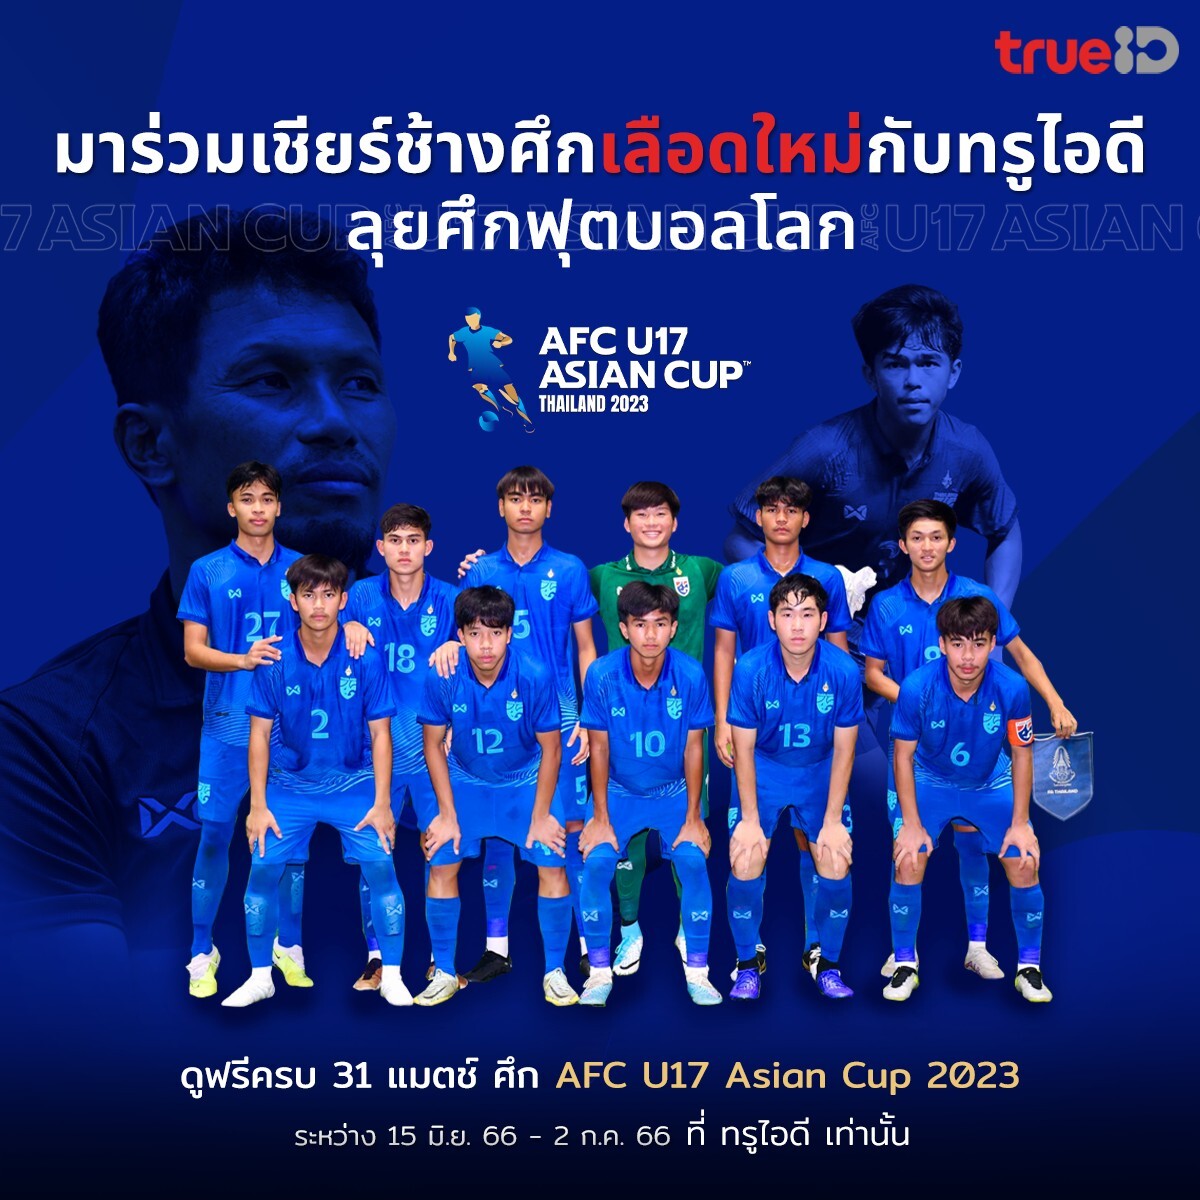 ทรูไอดี คว้าลิขสิทธิ์ออนไลน์ถ่ายทอดสด AFC U17 ASIAN CUP THAILAND 2023 ครบทุกแมตซ์ ชวนแฟนบอลไทย เชียร์ช้างศึกเลือดใหม่ มันส์สนั่นจอ ดูฟรี ที่ทรูไอดีที่เดียว